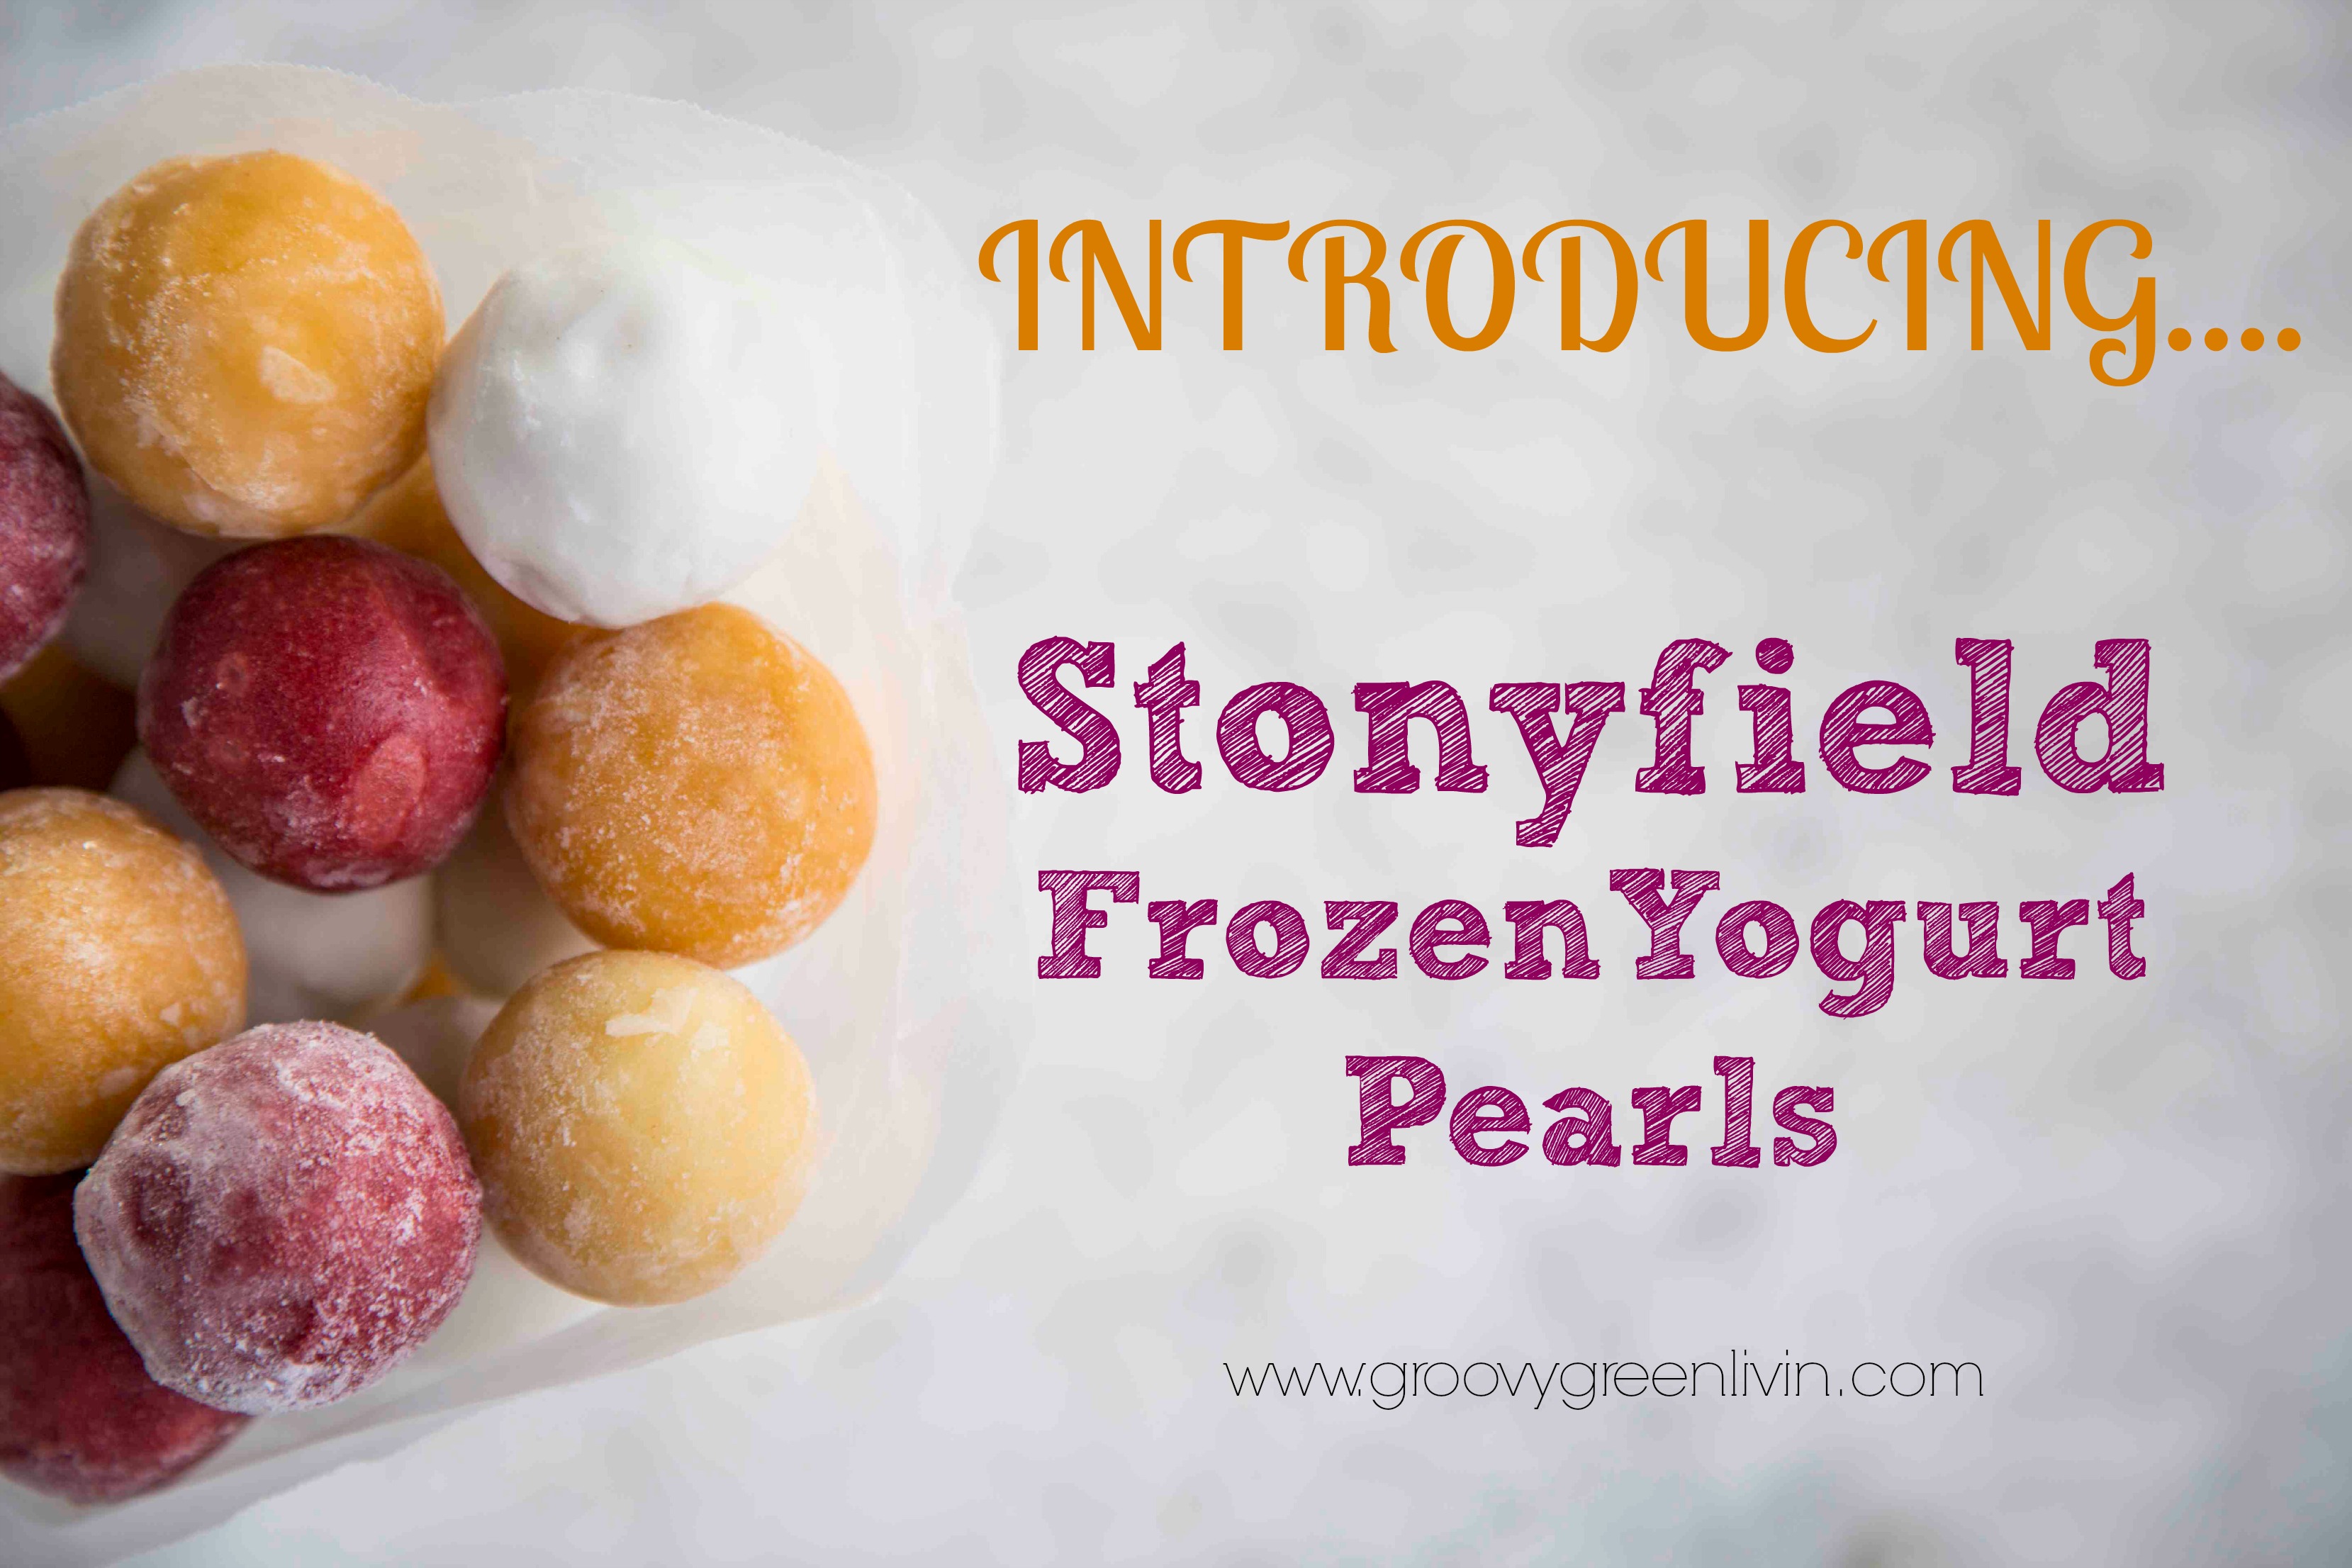 Stonyfield Frozen Yogurt Pearls Groovy Green Livin